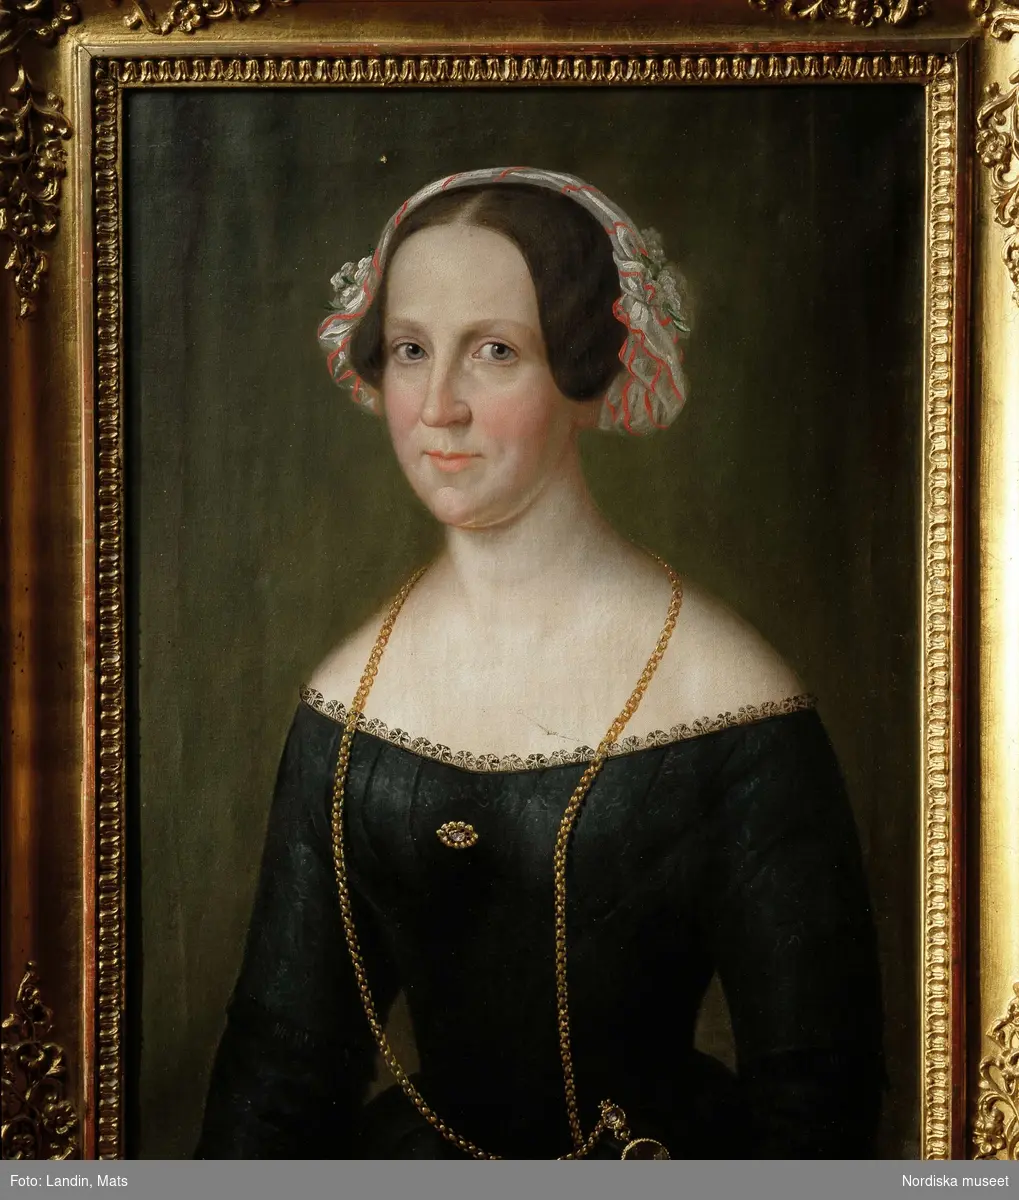 Porträtt av fru Ulrika Jansson, född Fogelmarck. Oljemålning av C P Lehman, 1849.
Nordiska museets föremål inv.nr 117515.